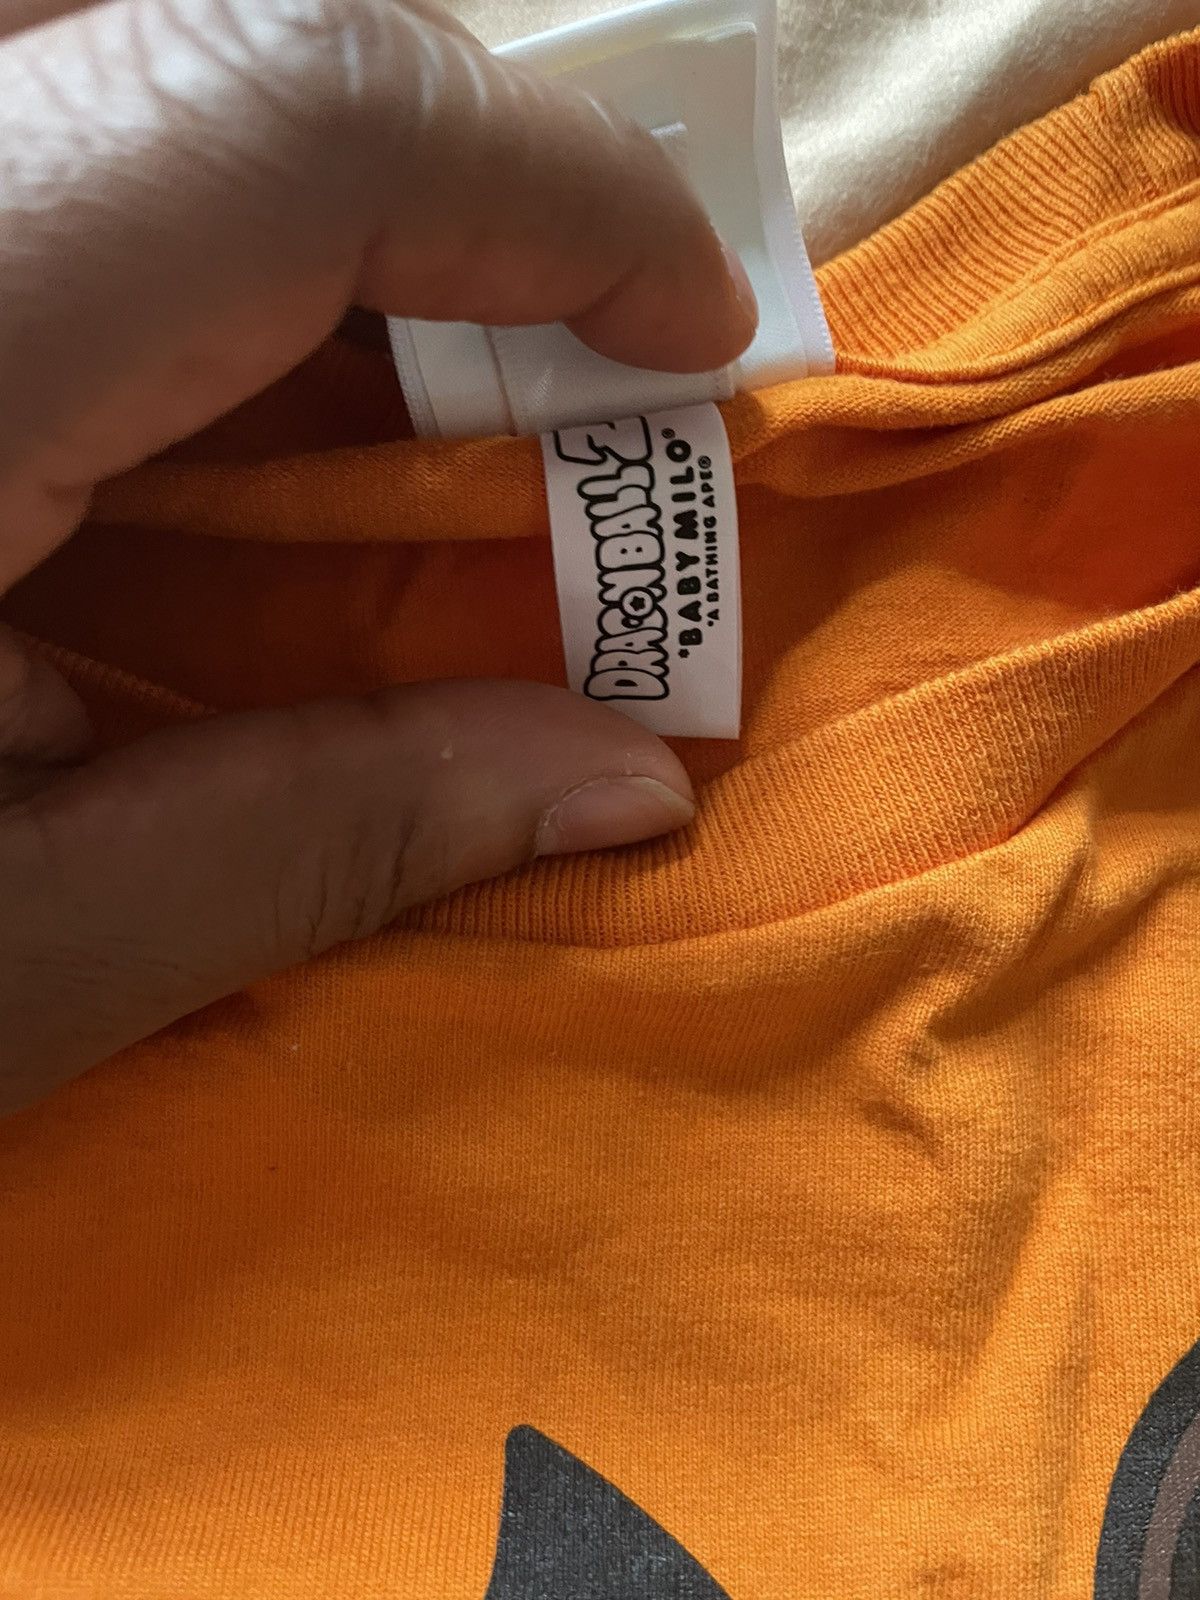 Bape Bape Dragon ball Z Vegeta Gohan Krillin Milo Orange T Shirt Size US L / EU 52-54 / 3 - 5 Thumbnail